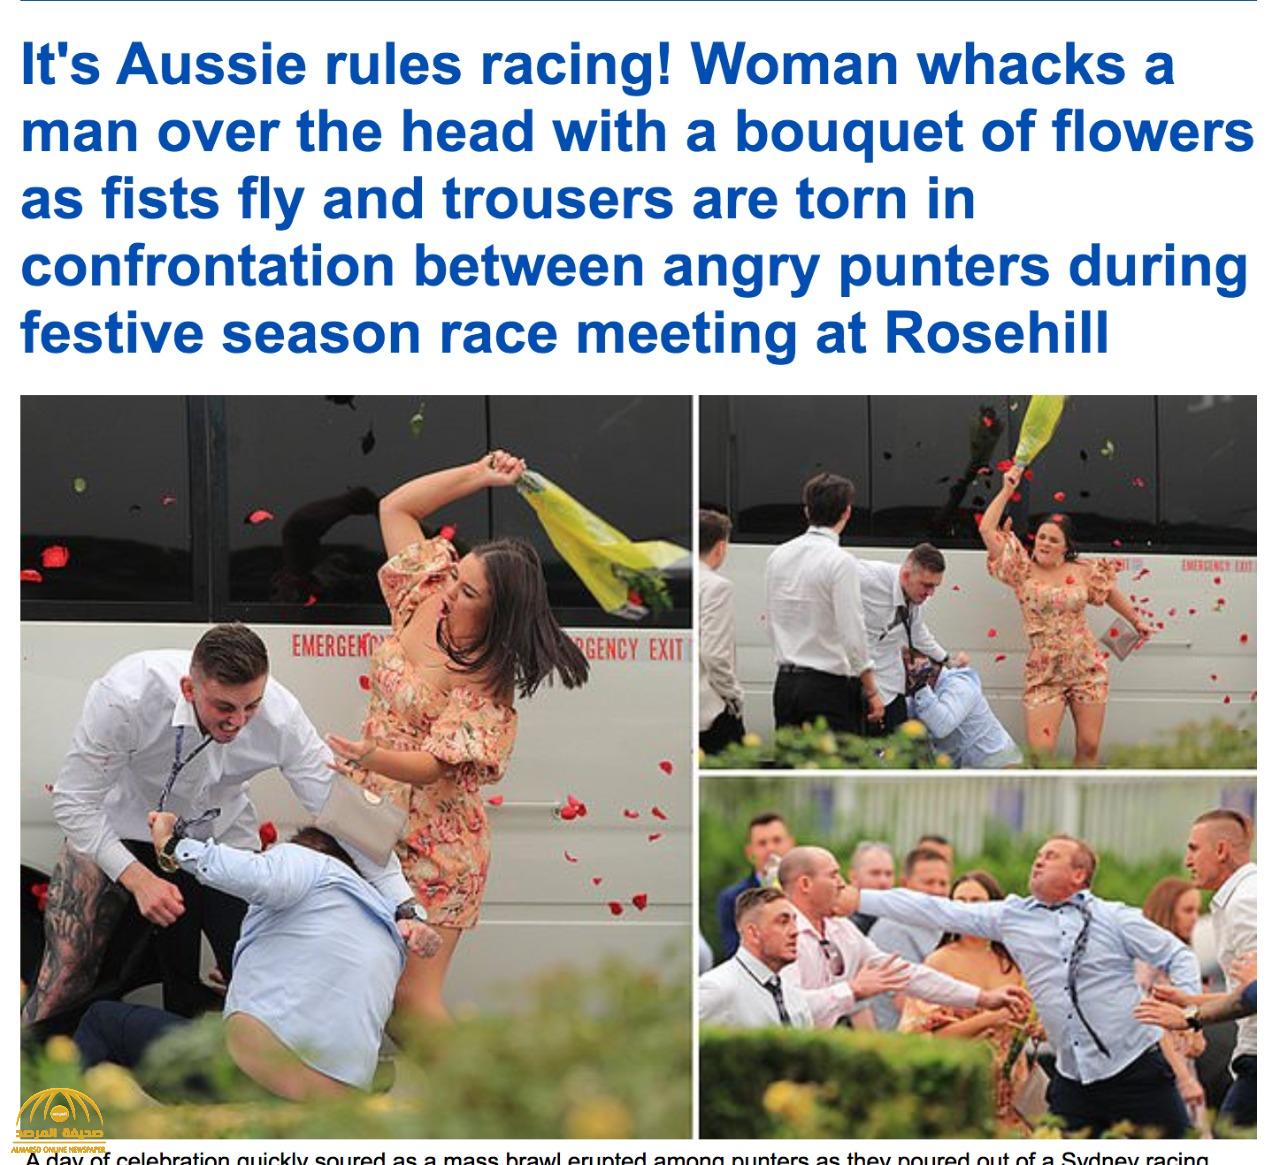 بالصور .. شاهد: سيدة تتدخل لفض اشتباك عنيف بين رجلين مزق أحدهما بنطلون الأخر في سباق للخيول باستراليا!